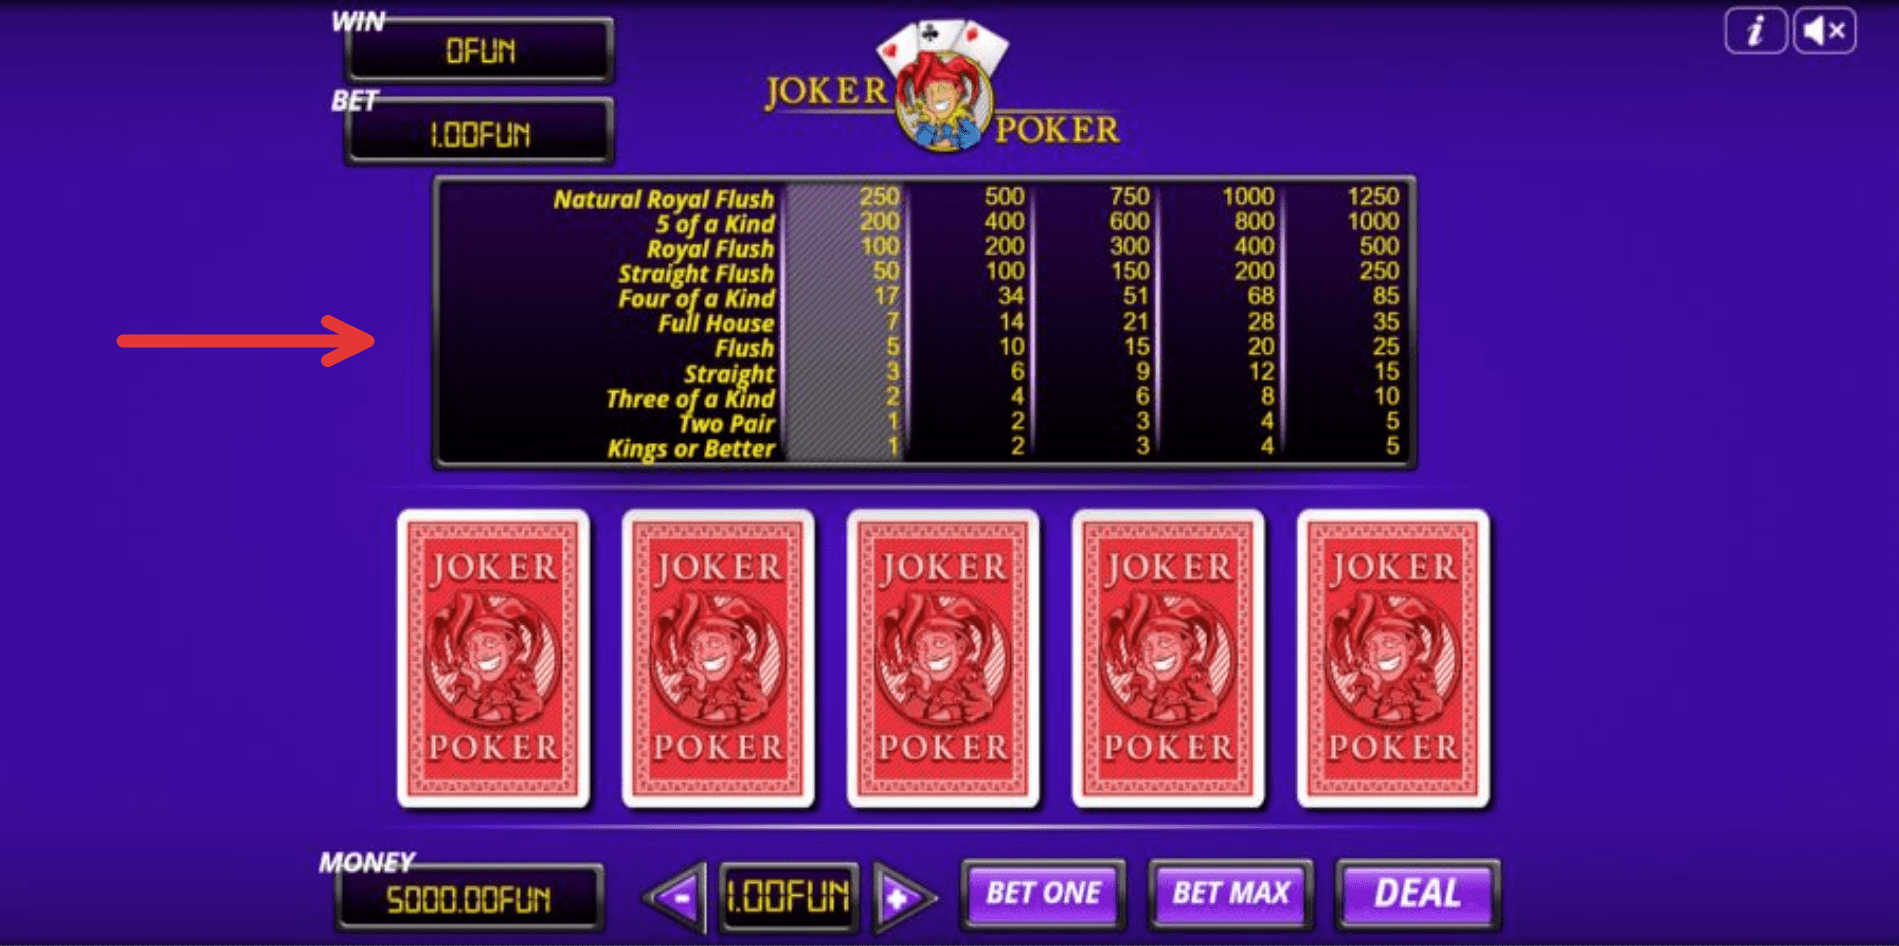 Video Poker Reading the Payout Table for Joker Poker